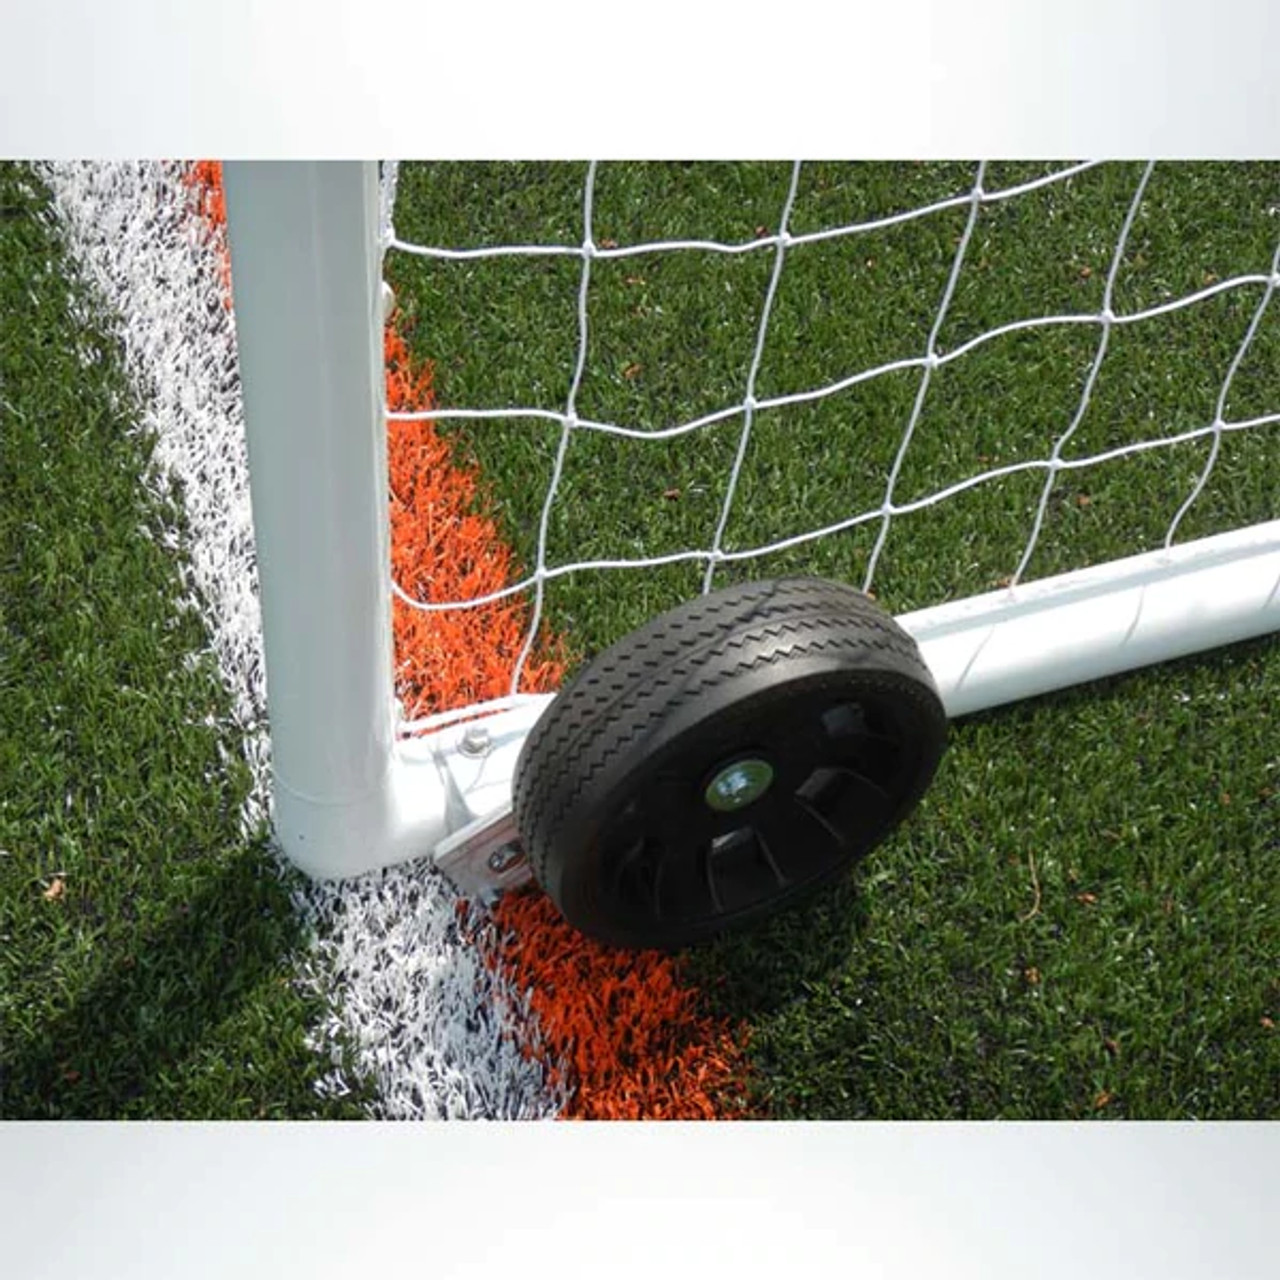 PEVO soccer goal wheels